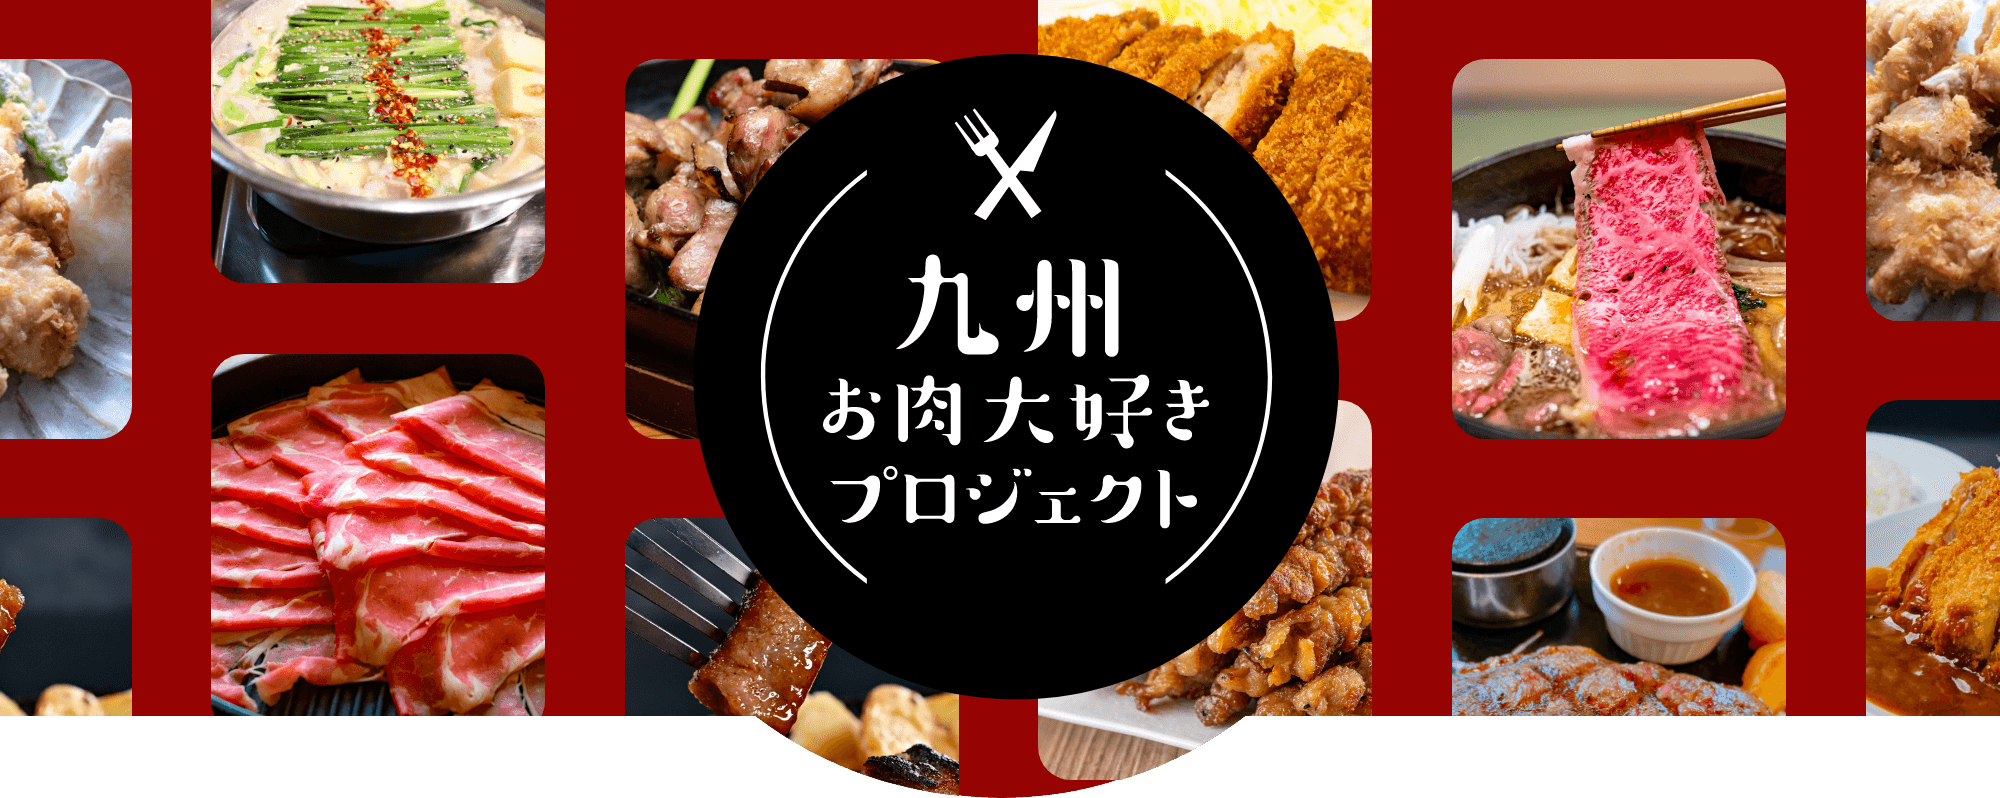 九州お肉大好きプロジェクト